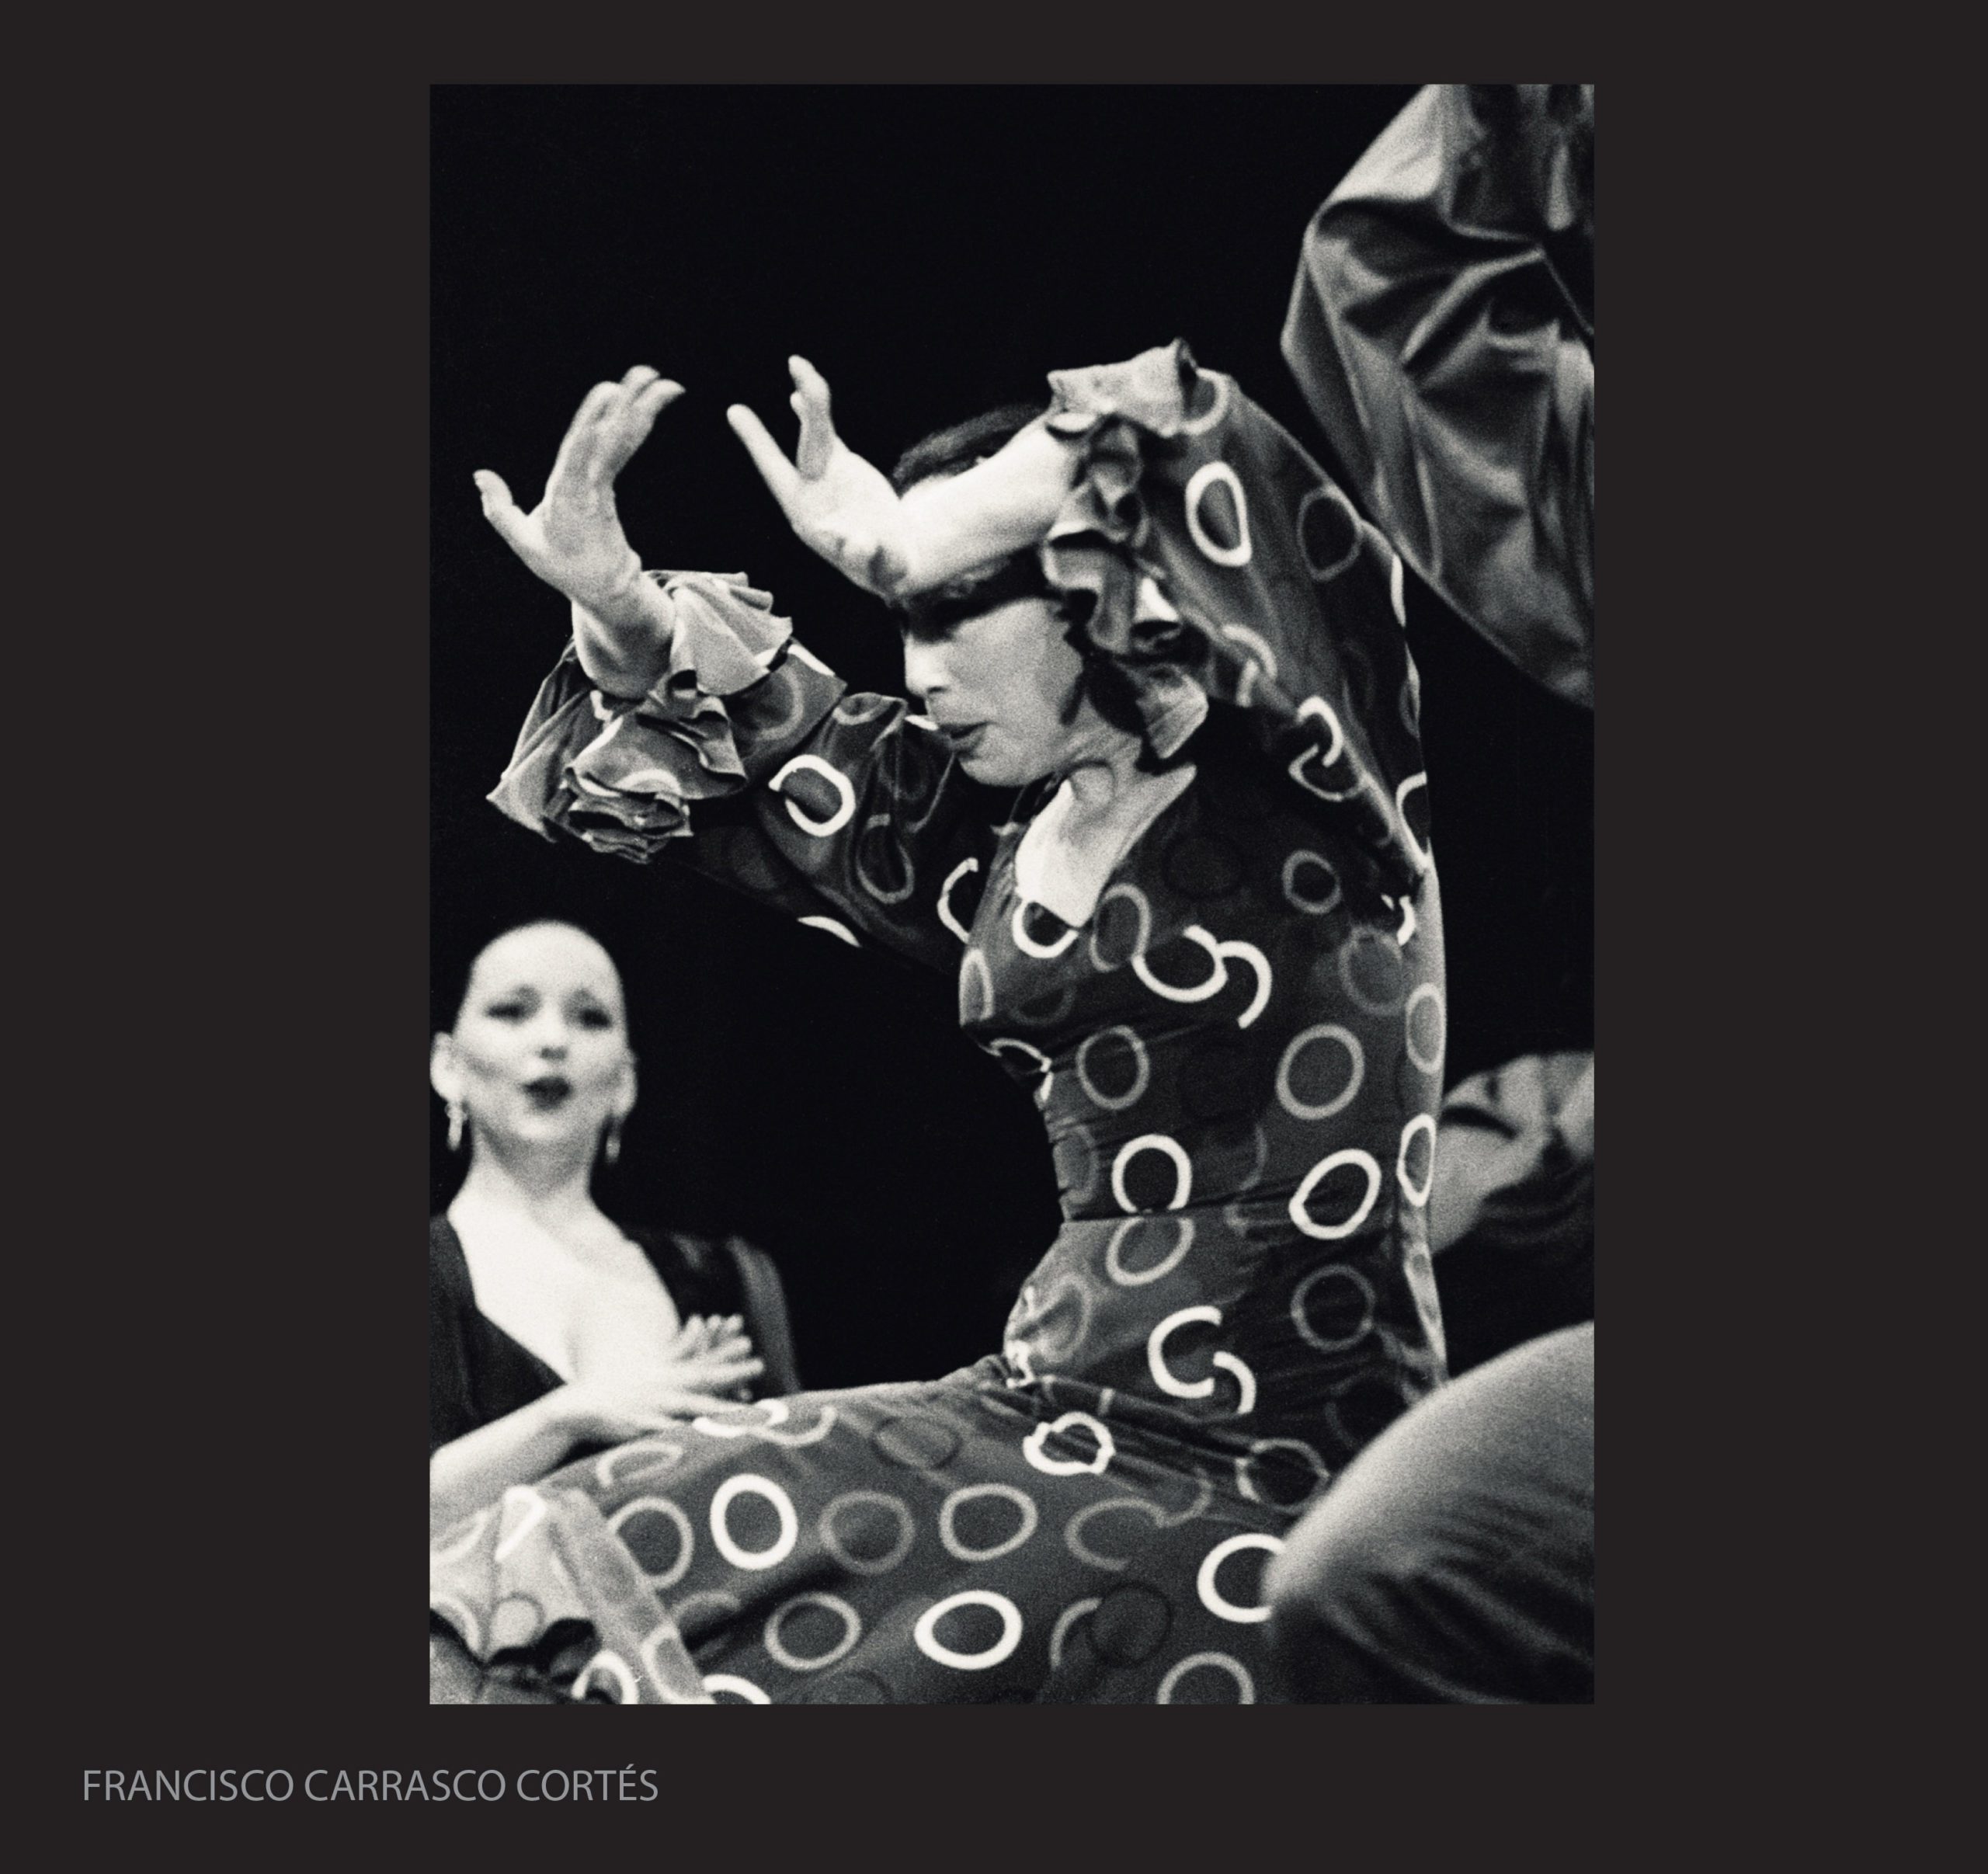 Fotografía del concurso de Fotografía Flamenco. Por Francisco Carrasco Cortés